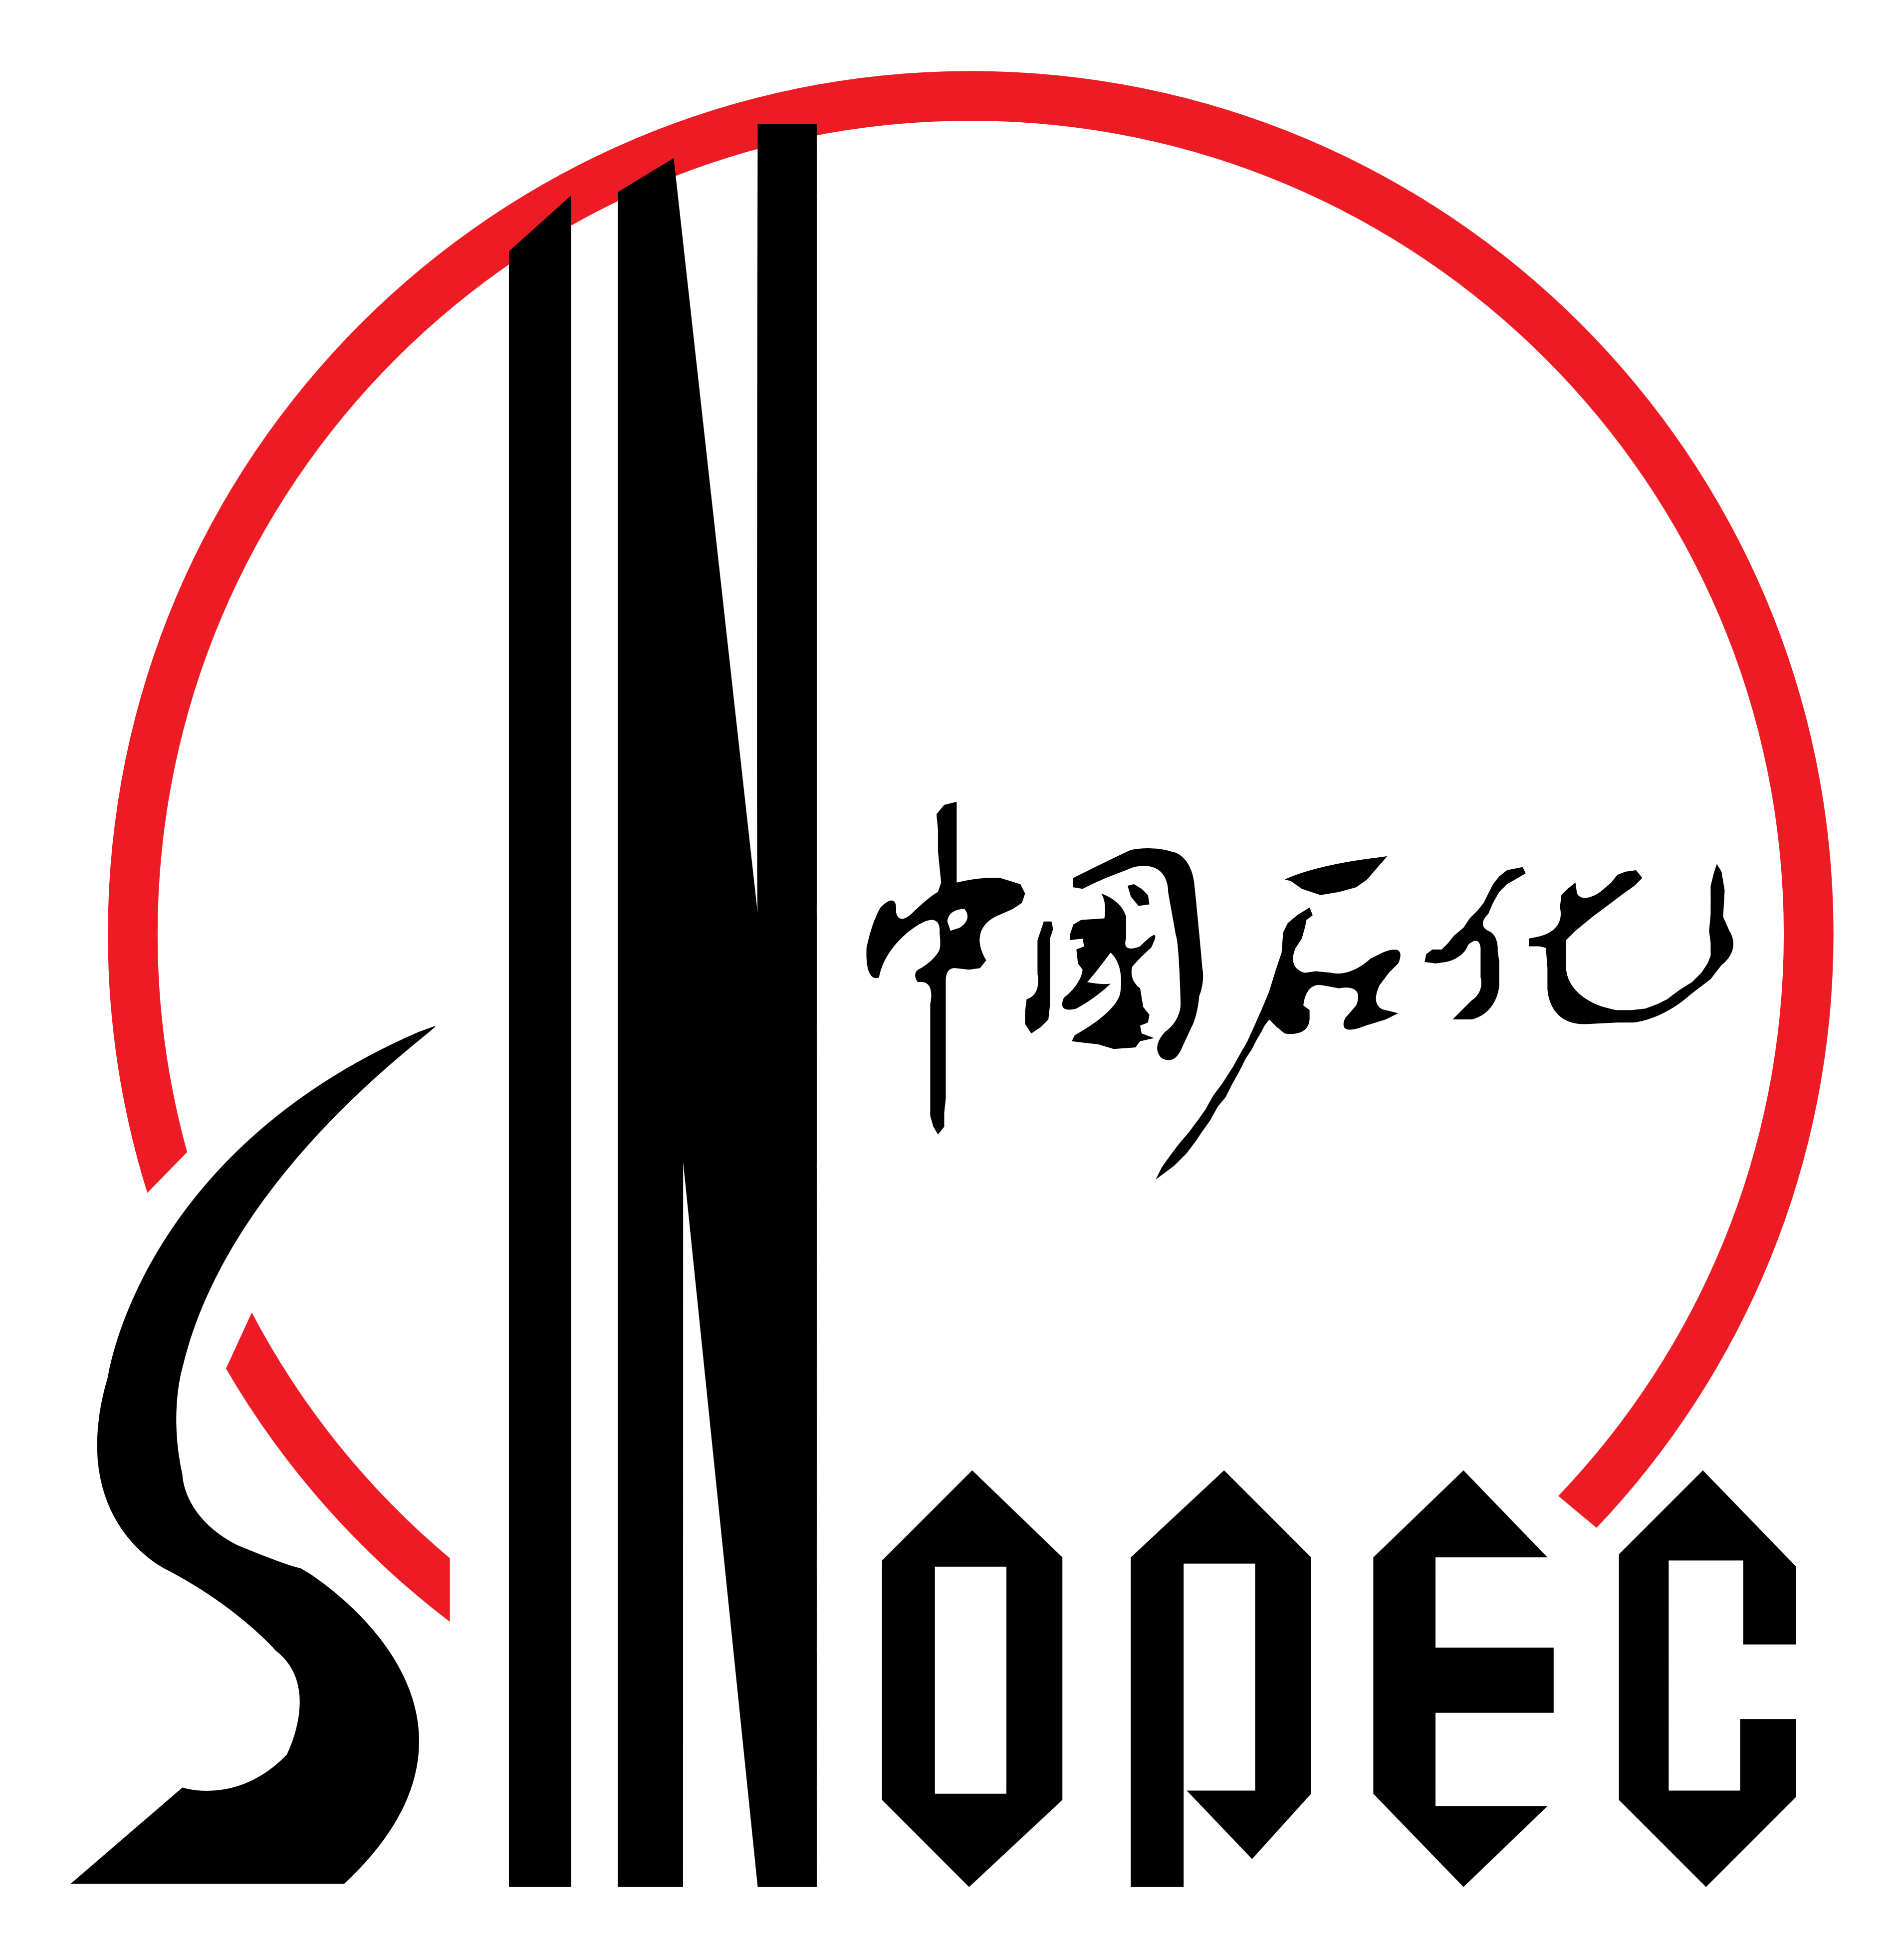 Sinopec logo, logotype, emblem